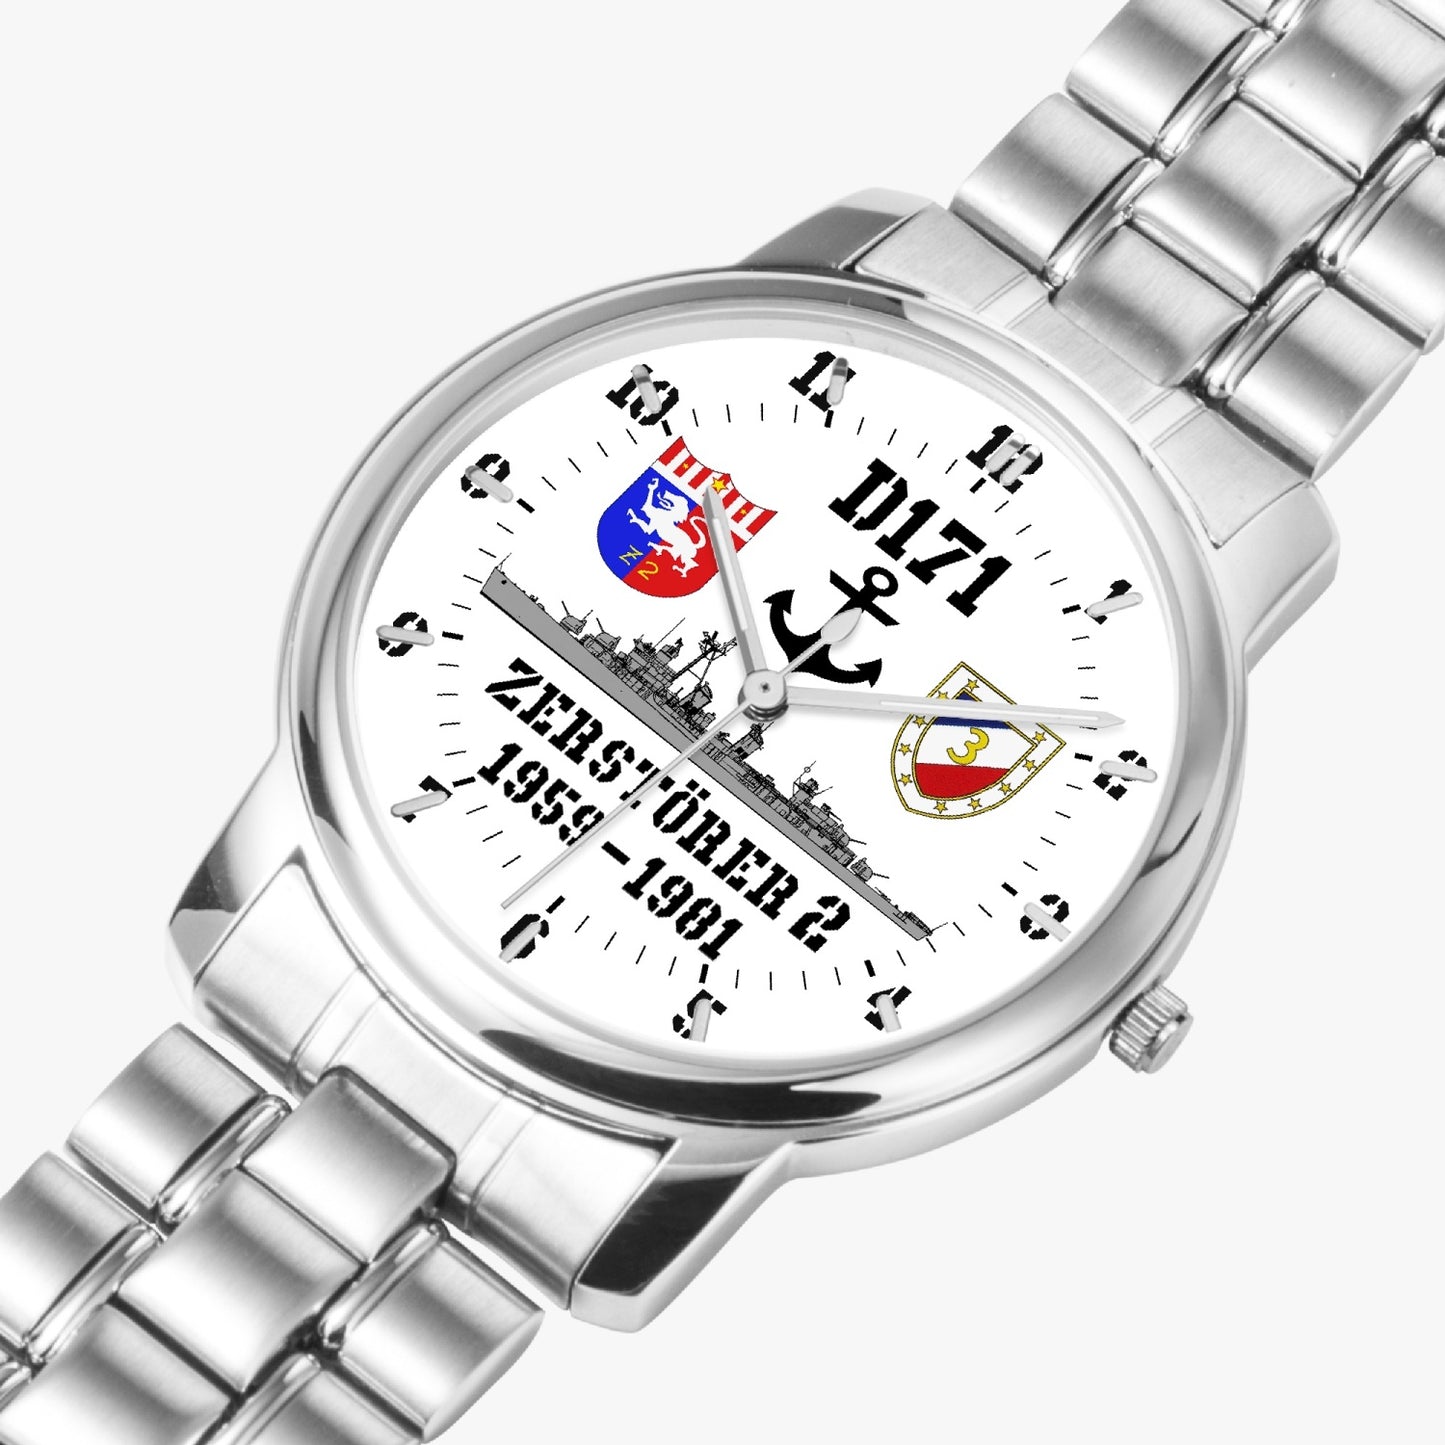 Armbanduhr D171 ZERSTÖRER 2 - Batterie